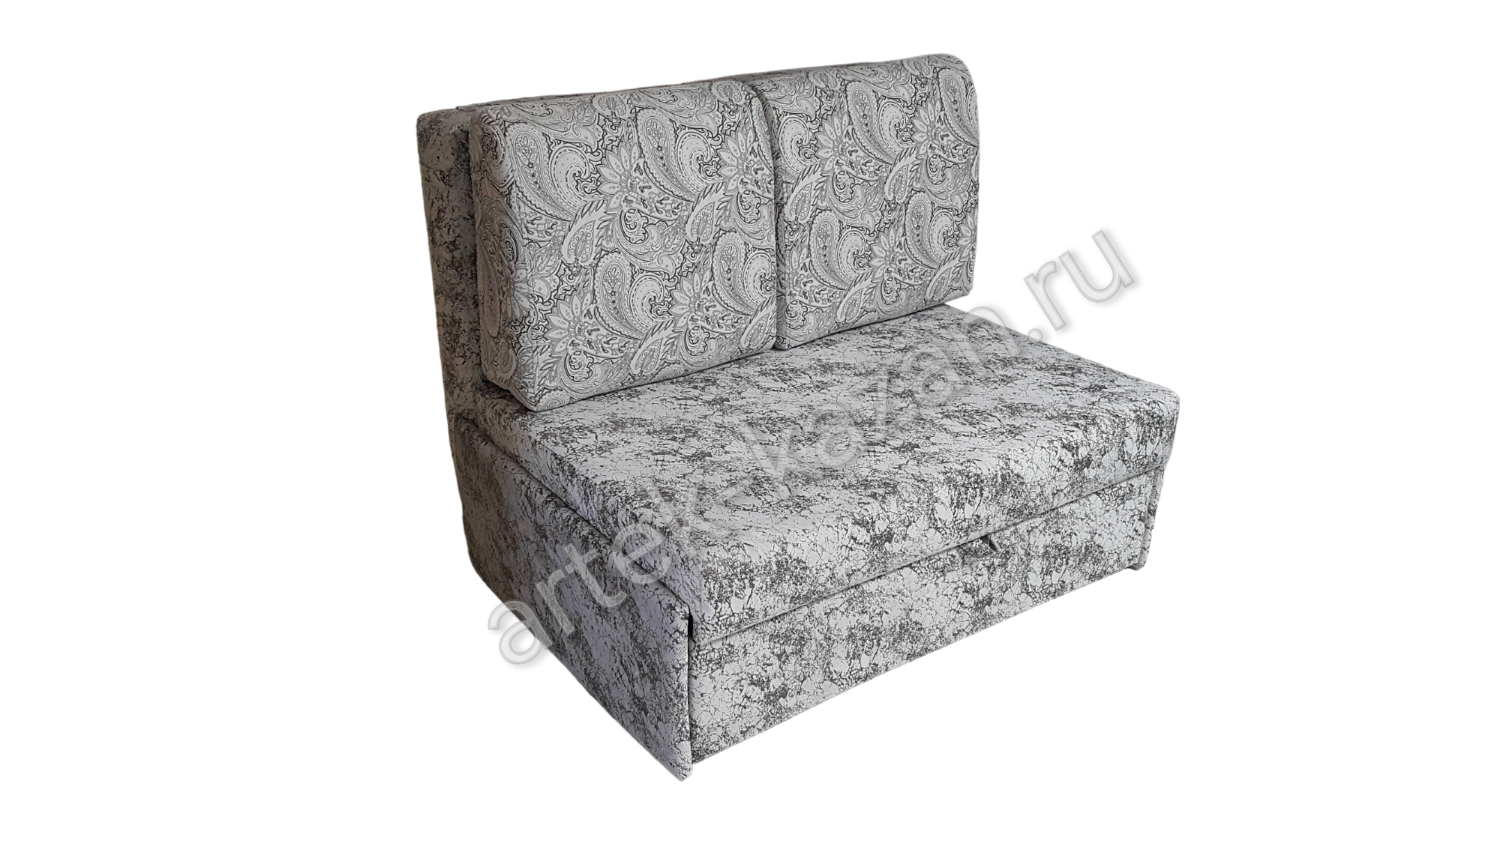 Мини диван на выкатном механизме Миник фото № 36. Купить недорогой диван по низкой цене от производителя можно у нас.